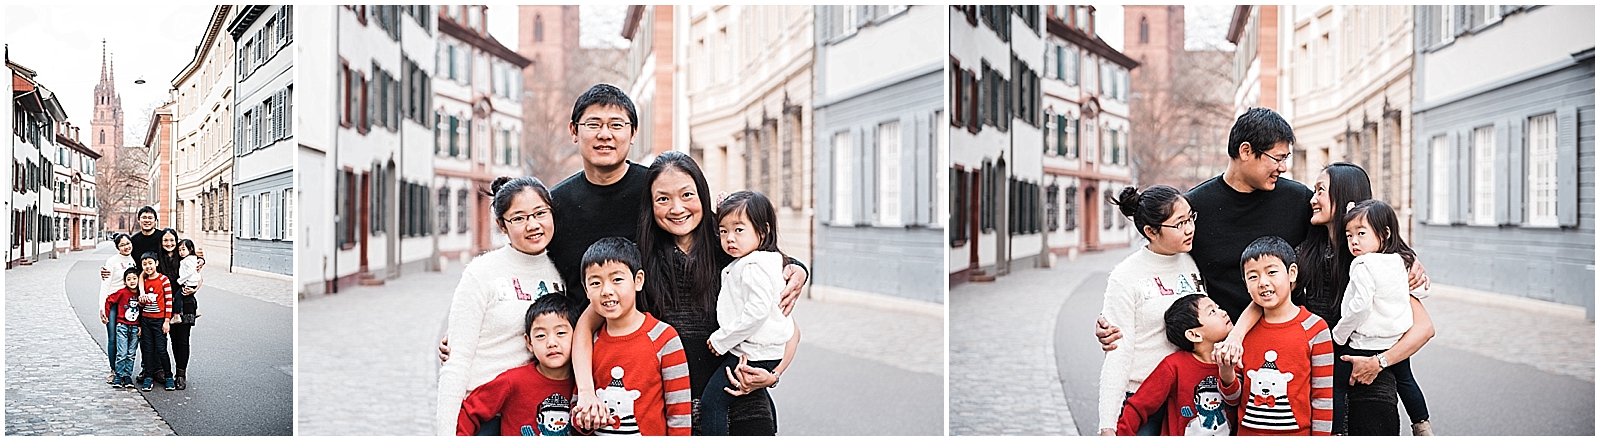 Winter Basel Family Photos